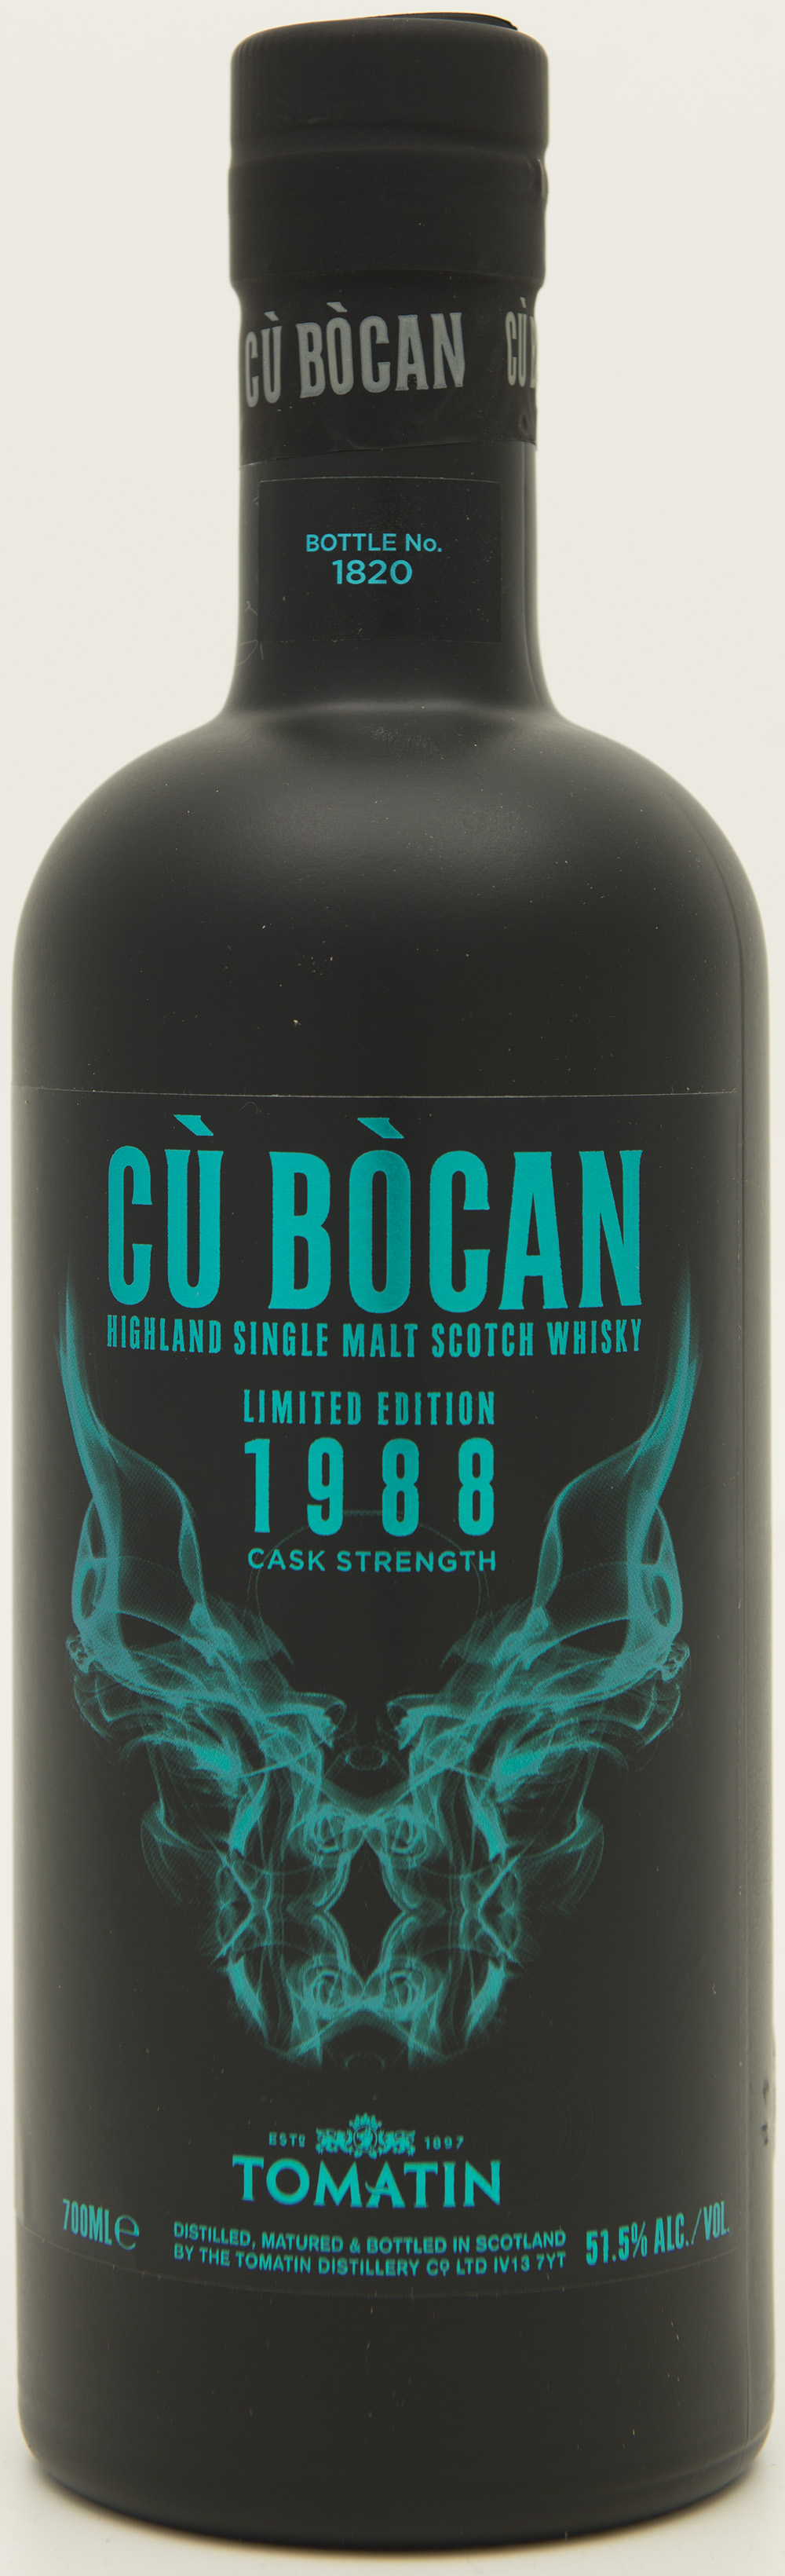 Billede: DSC_1135 - Tomatin Cu Bocan Limited Edition 1988 Cask Strength - bottle front.jpg